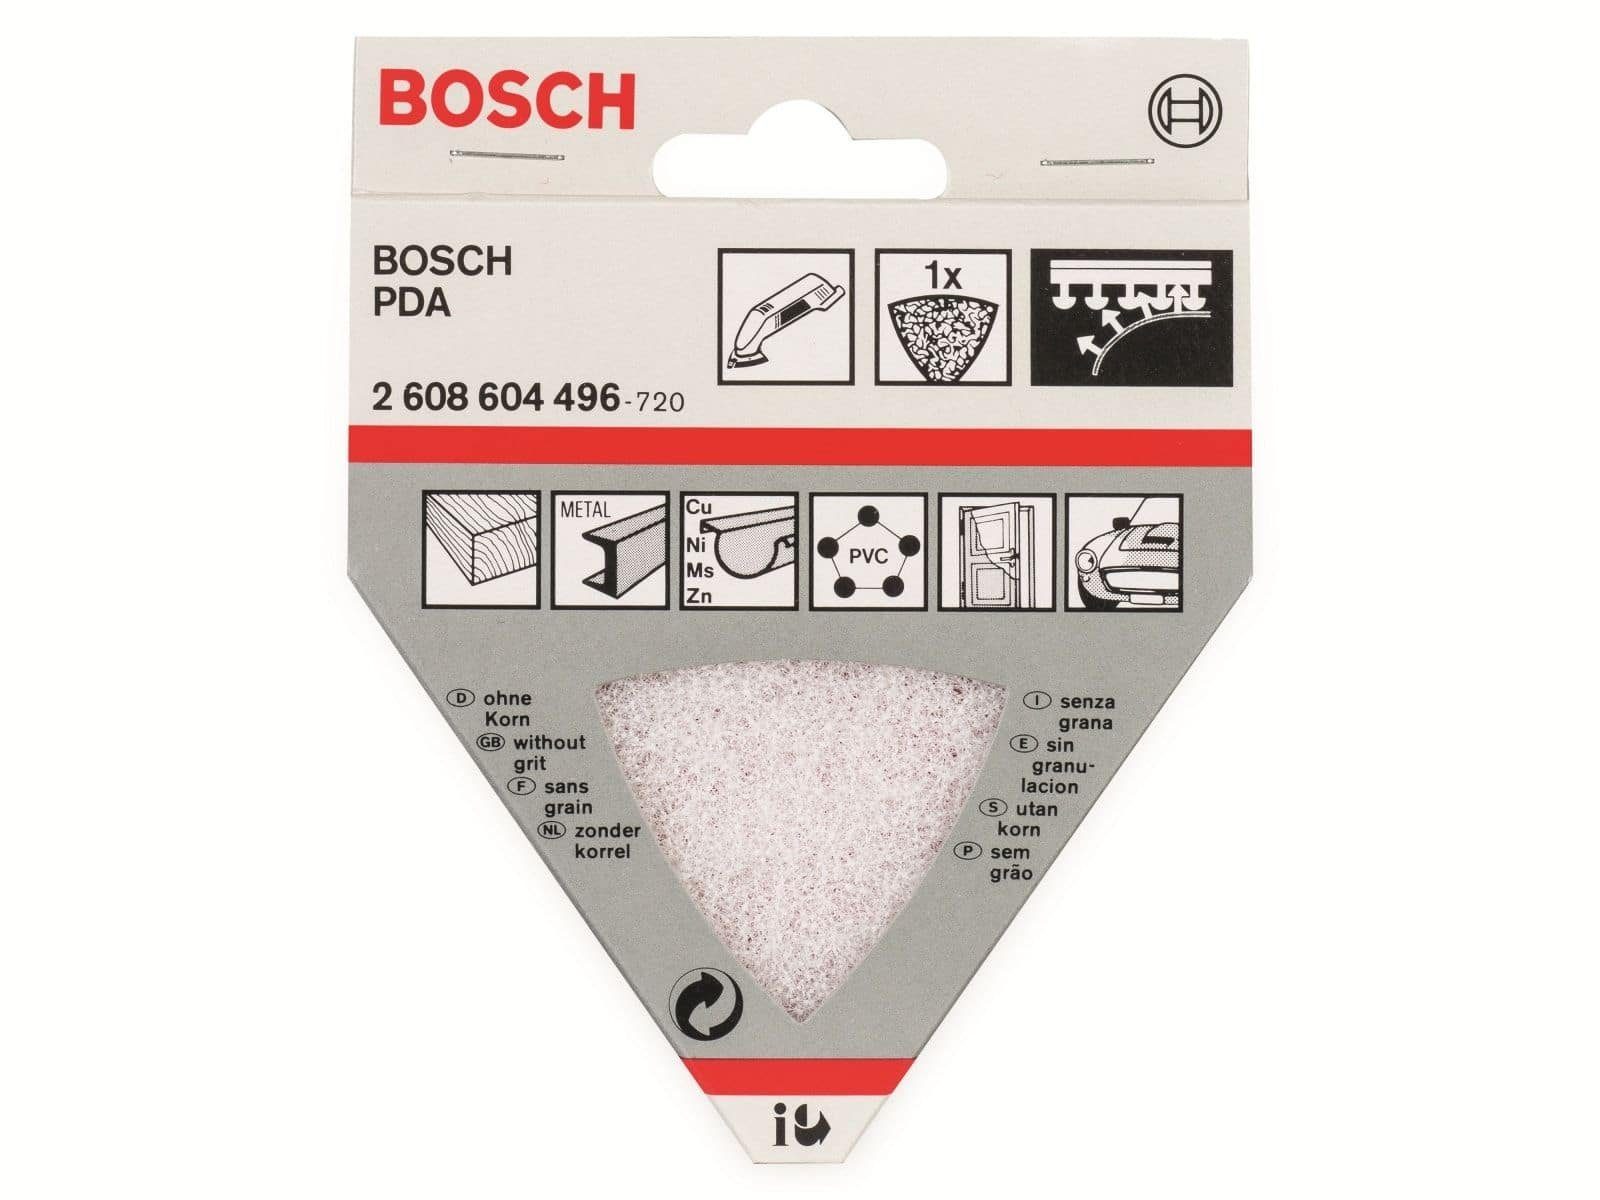 Bosch Accessories BOSCH Allesschneider BOSCH Reinigungsvlies für Dreieckschleifer